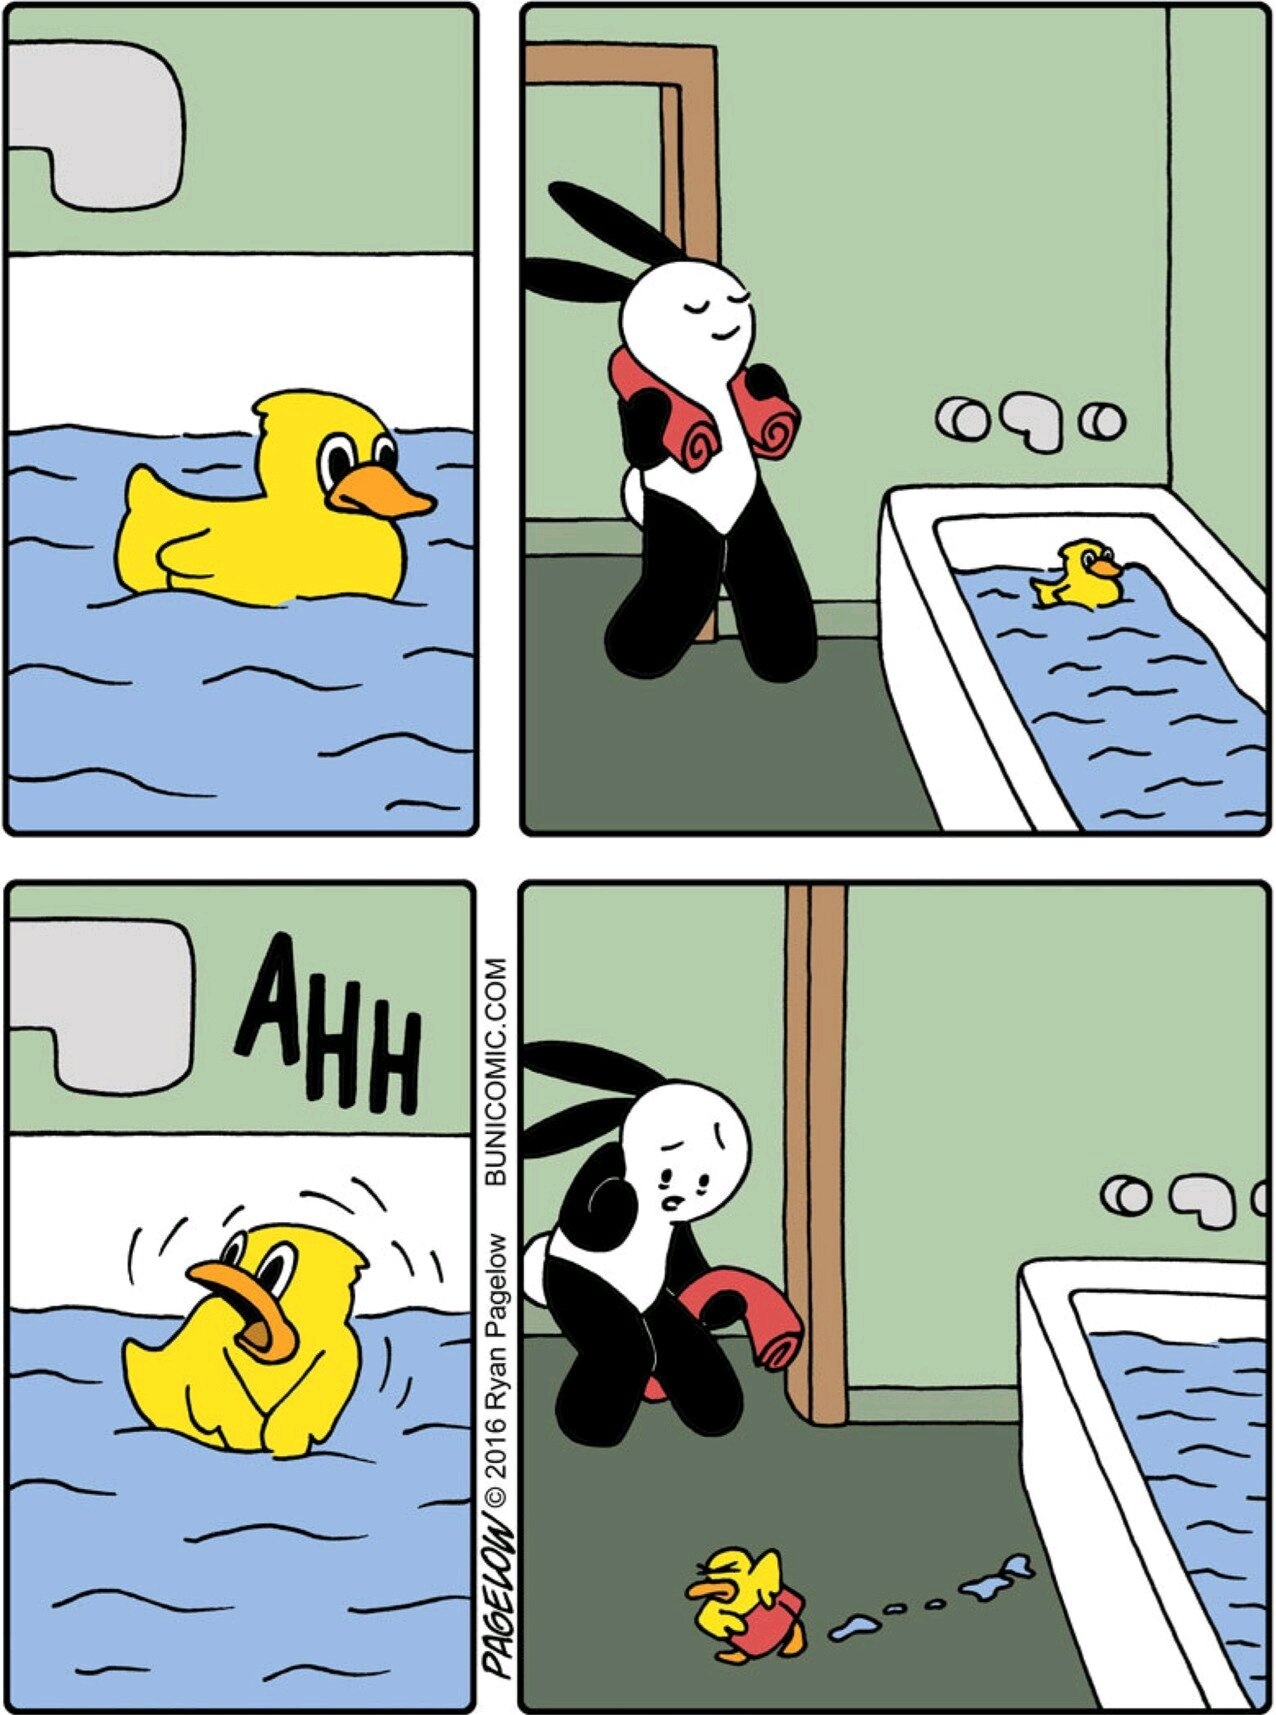 Quack! - meme